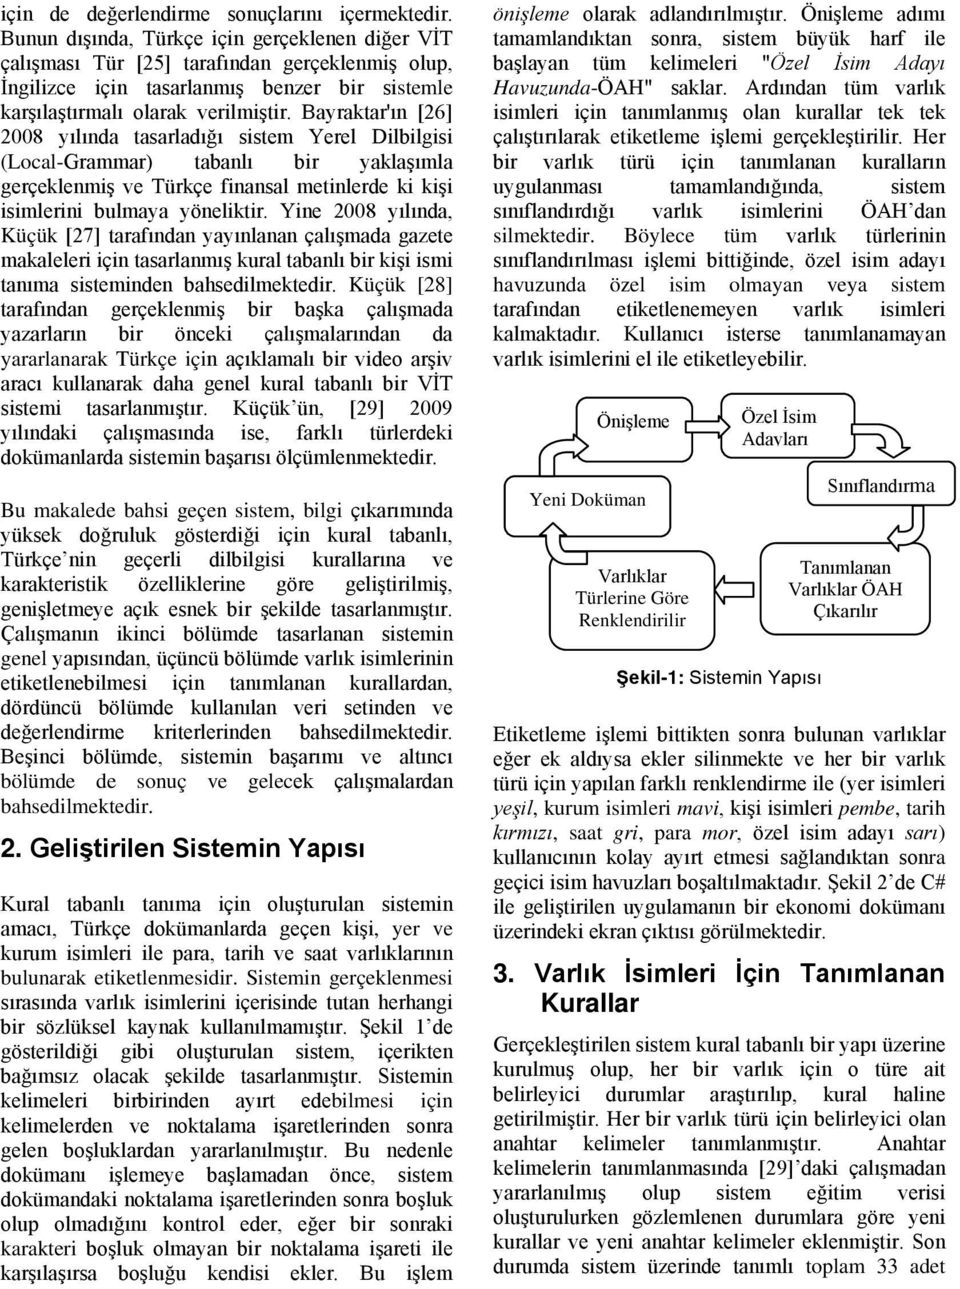 Bayraktar'ın [26] 2008 yılında tasarladığı sistem Yerel Dilbilgisi (Local-Grammar) tabanlı bir yaklaşımla gerçeklenmiş ve Türkçe finansal metinlerde ki kişi isimlerini bulmaya yöneliktir.